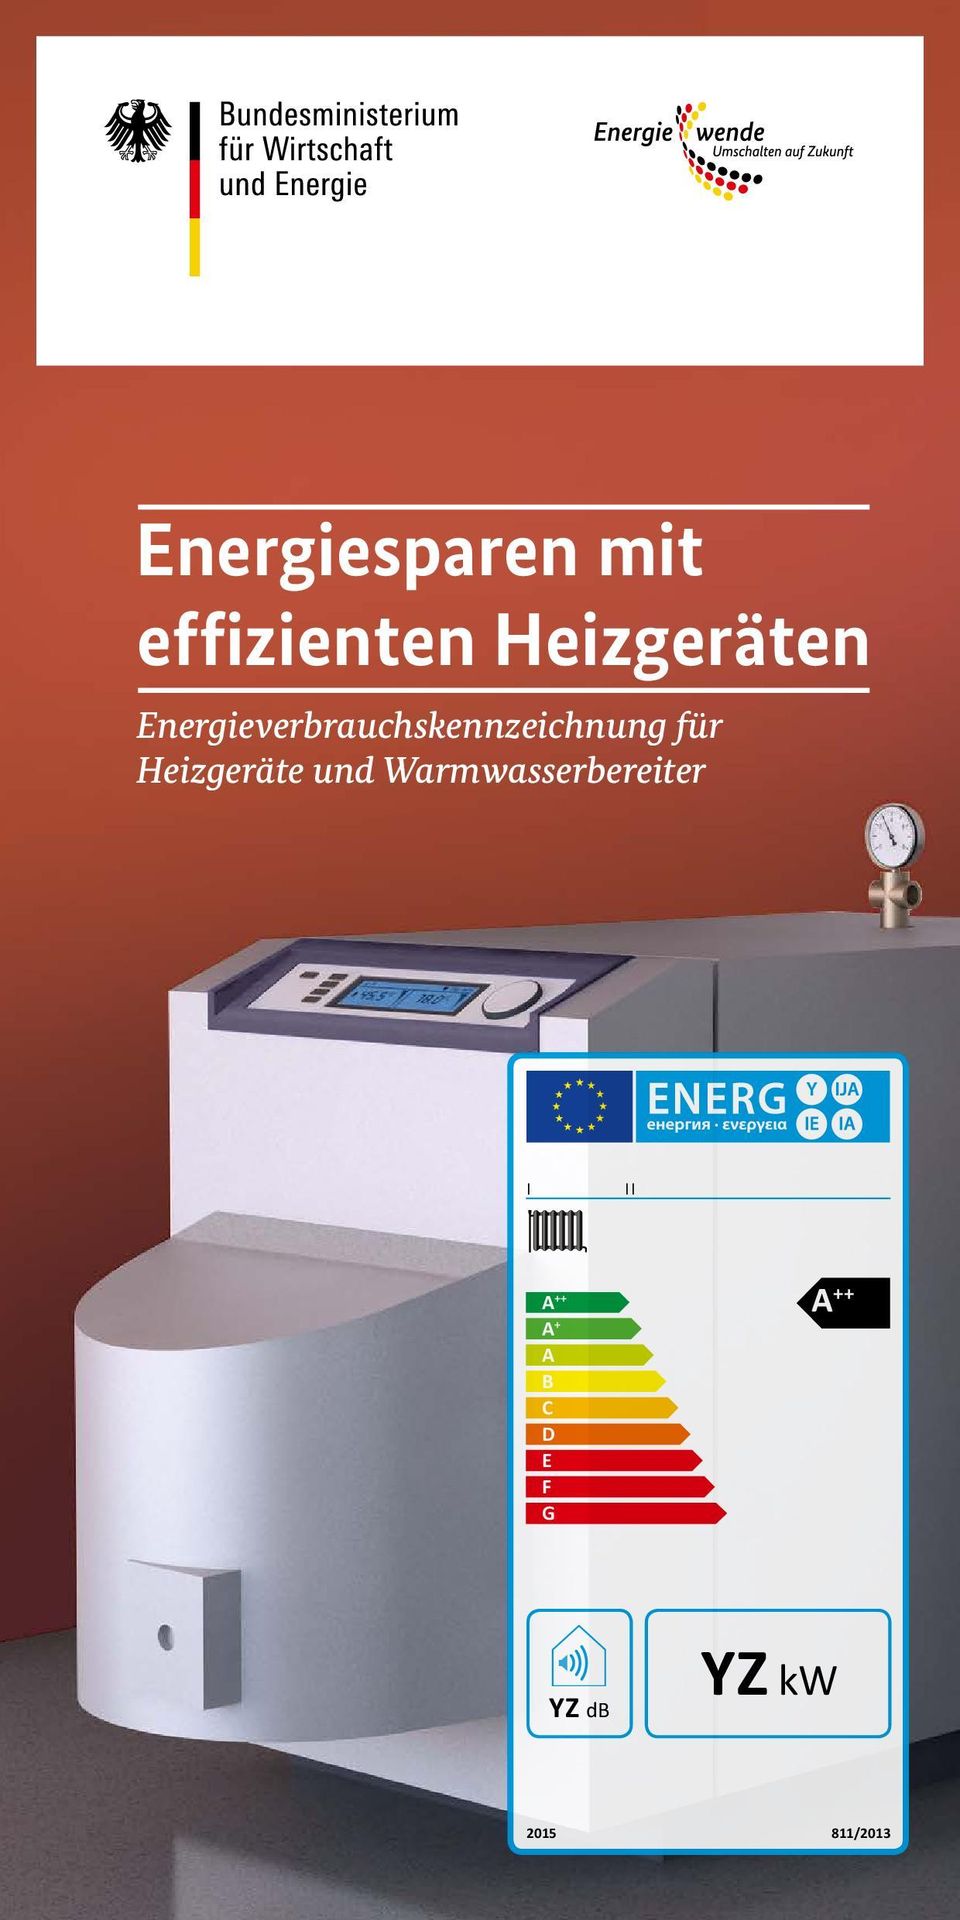 Energieverbrauchskennzeichnung für